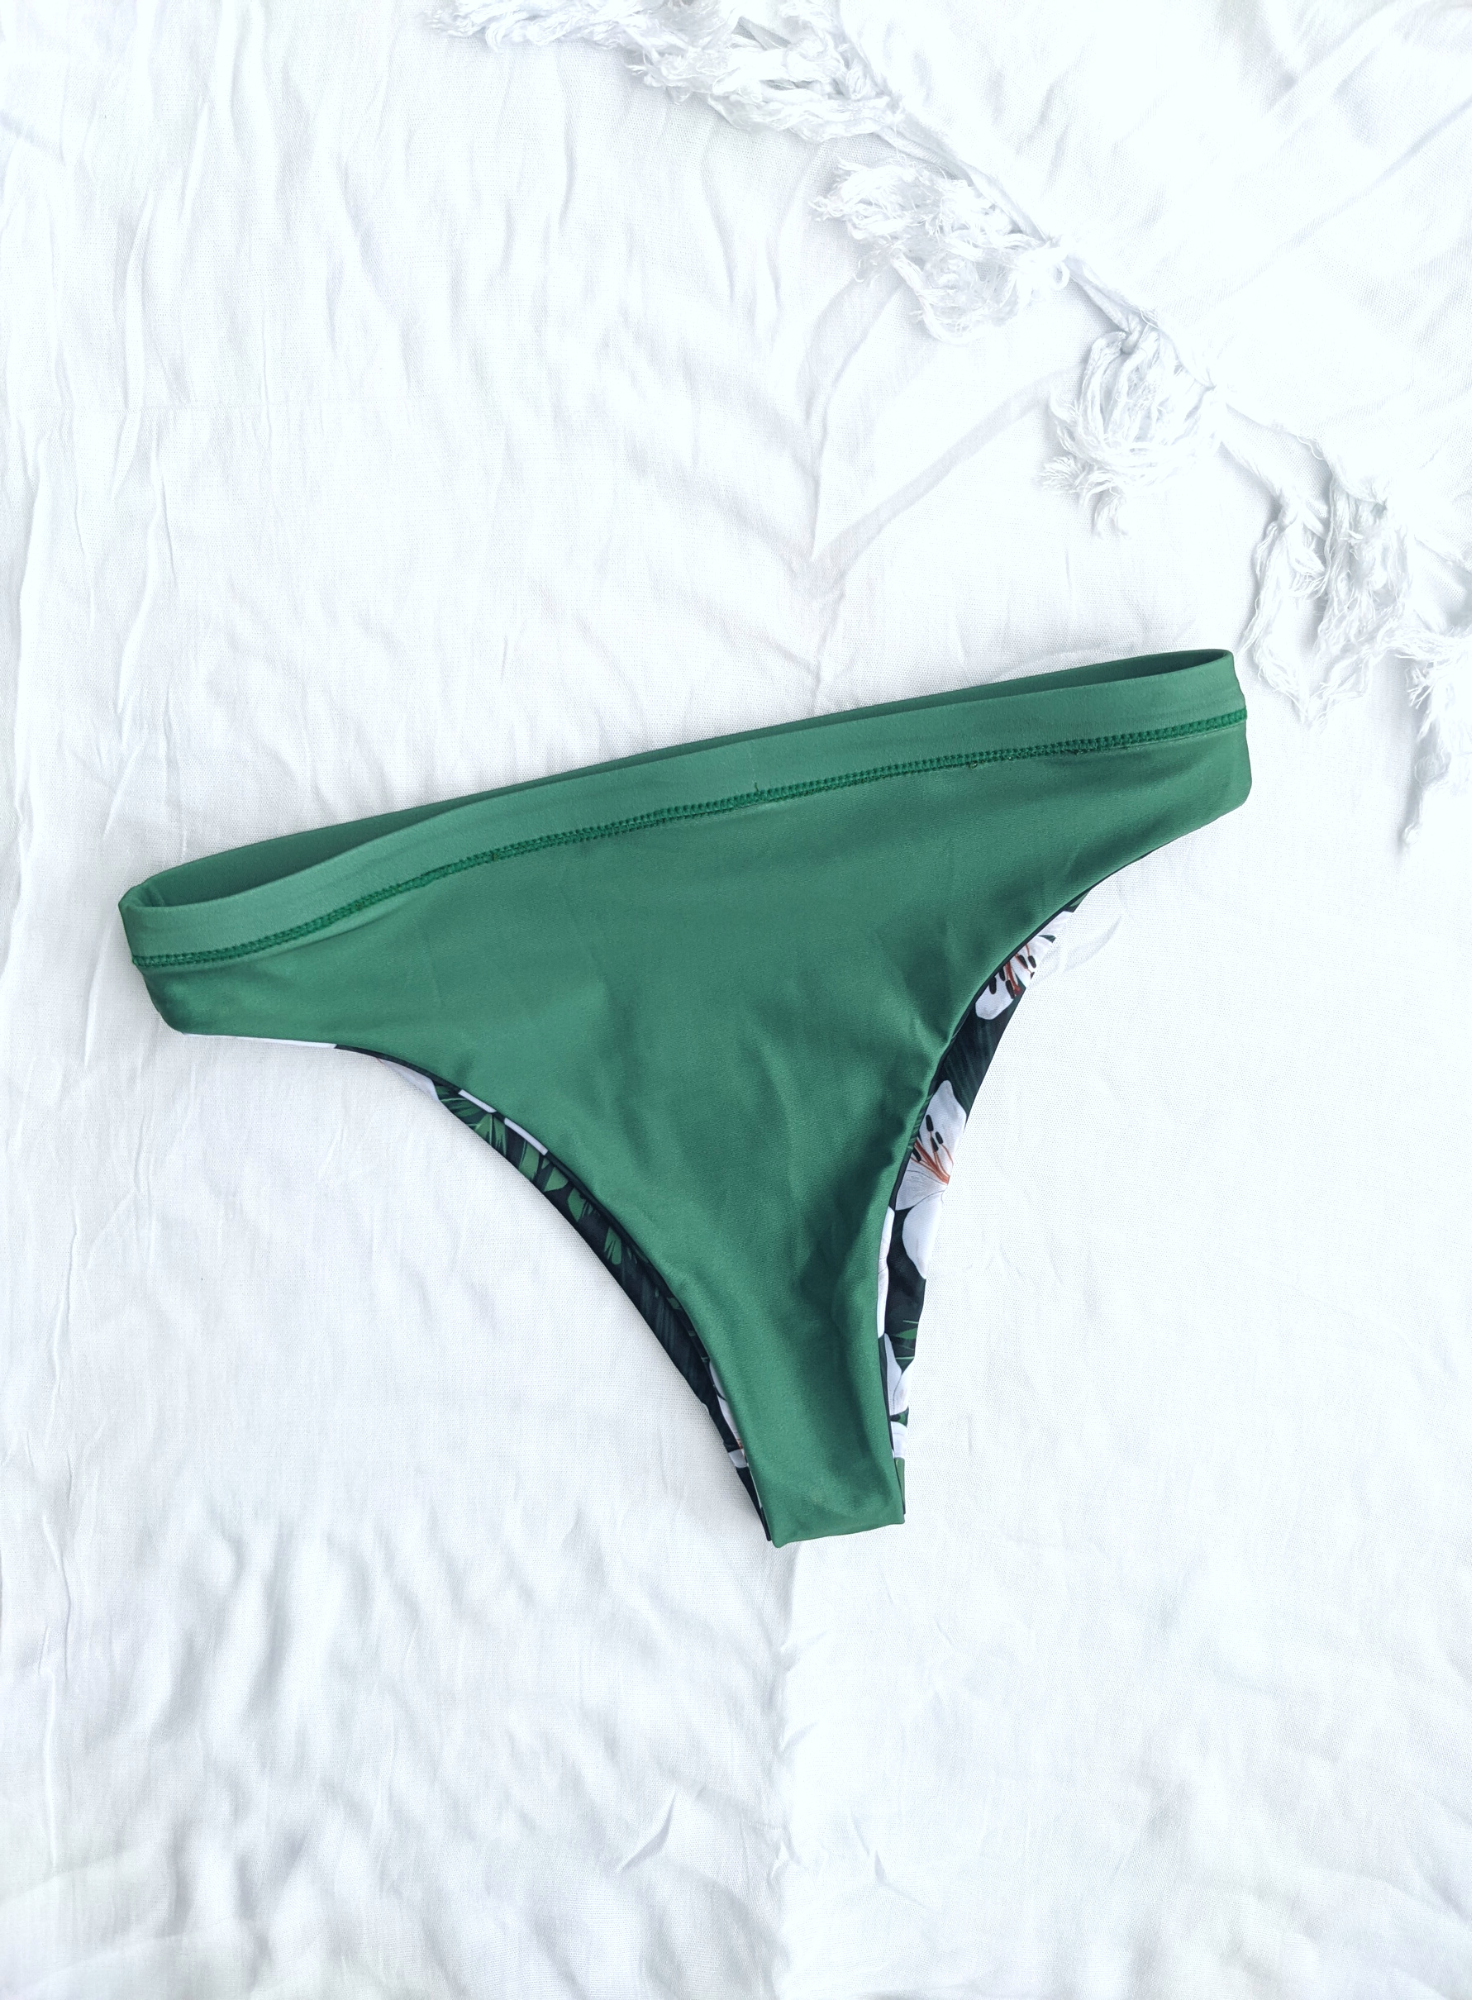 Emerald green string bikini bottoms